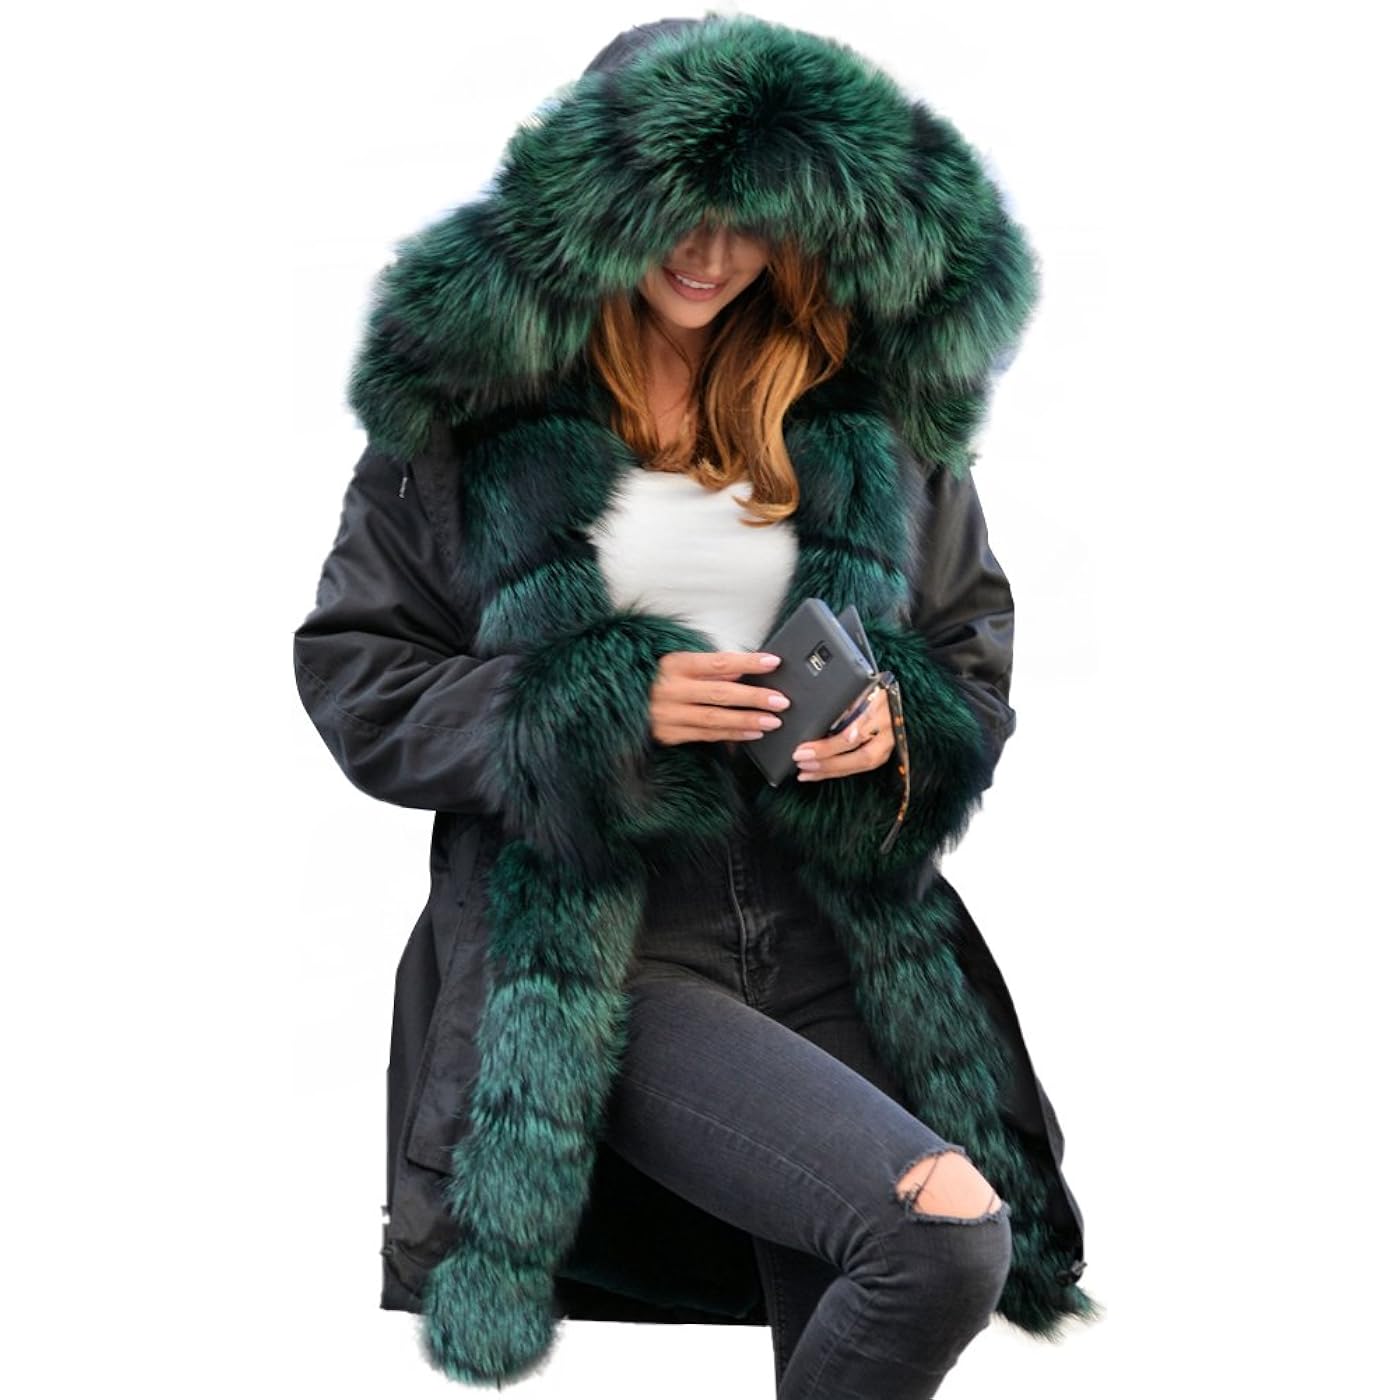 Парка Aofur Long Warm Winter Faux Fur Collar Qulited Women's, черный/зеленый женская куртка на хлопковом наполнителе длинная облегающая парка с меховым воротником и капюшоном зима 2019